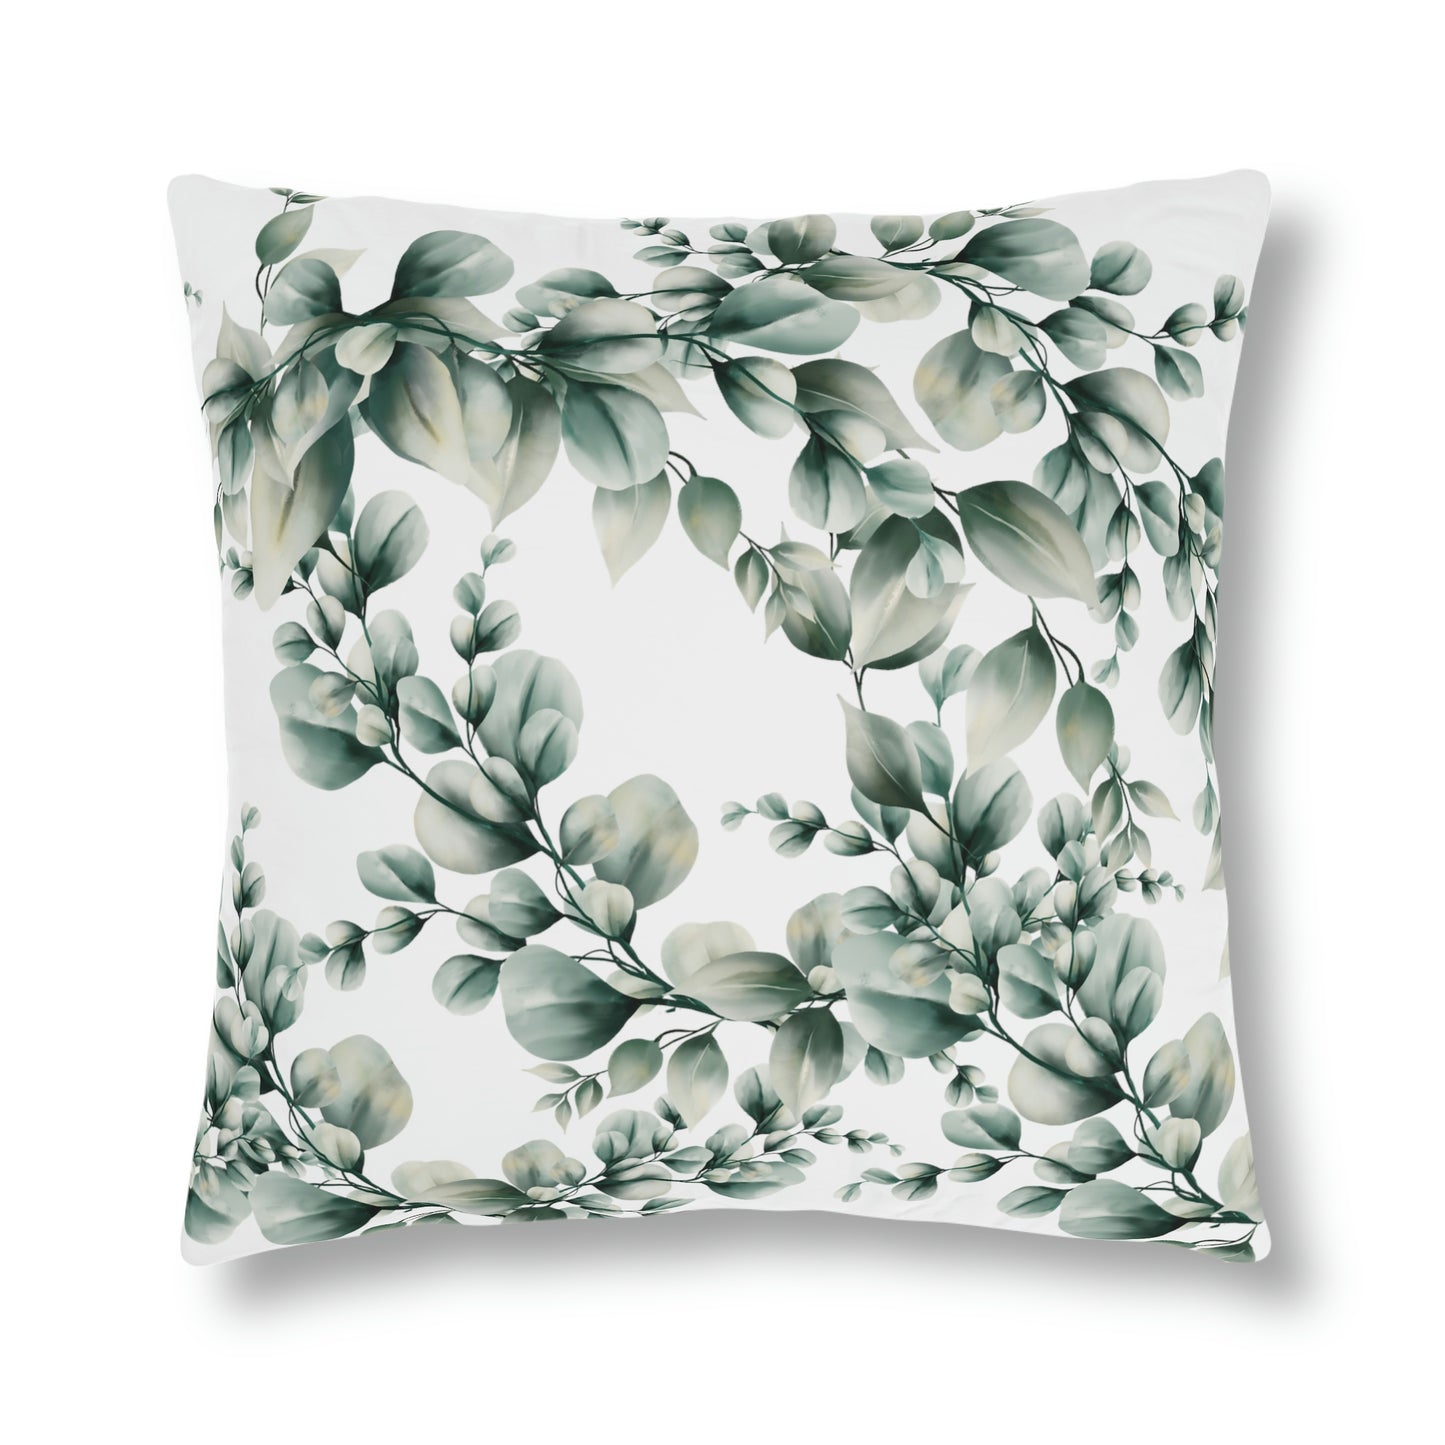 Eucalyptus Print Outdoor Patio Pillow for spring or summer decor